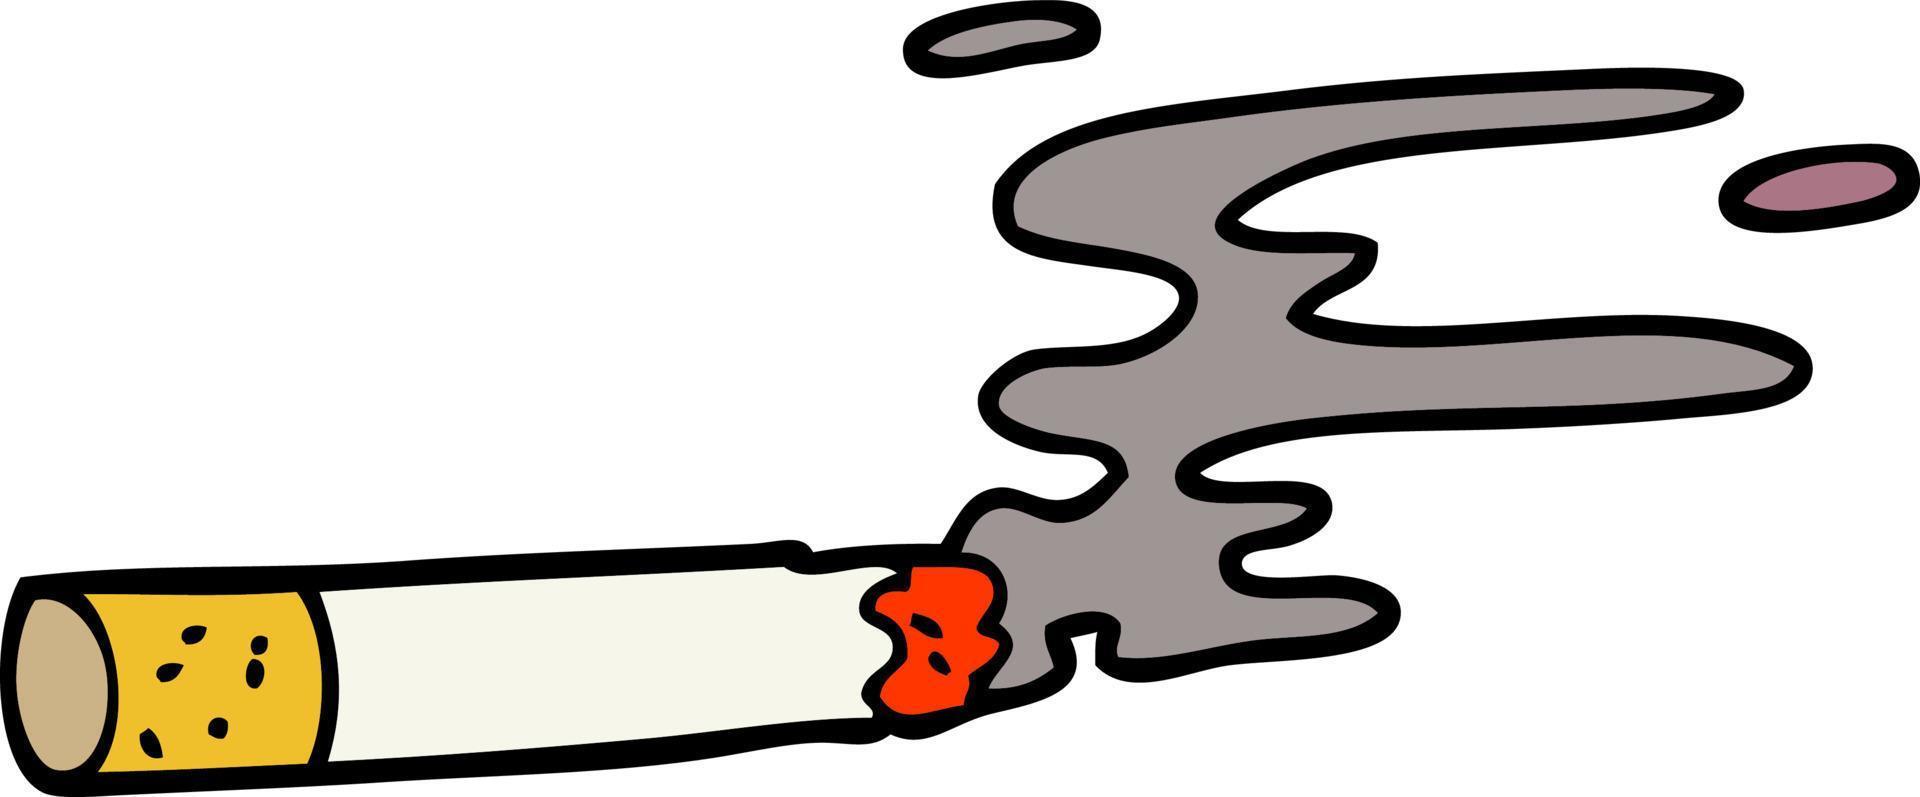 cartone animato scarabocchio sigaretta vettore